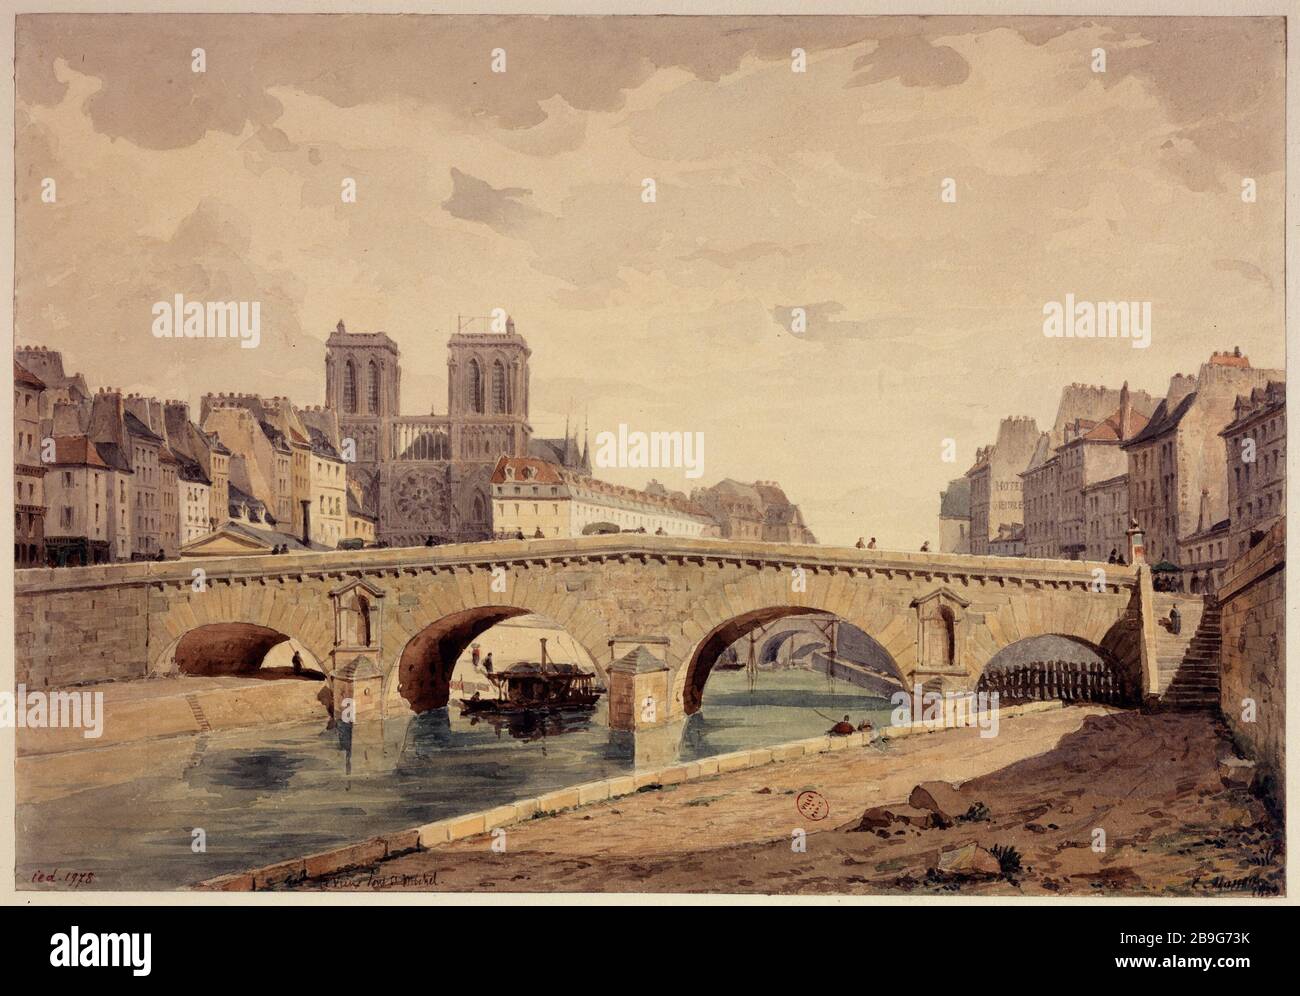 Il vecchio ponte Saint-Michel nel 1850 Louis-Martial-Théodat Masson (1827-?). Le vieux pont Saint-Michel it 1850. Parigi (VIème arr.), 1850. Acquarelle. Parigi, musée Carnavalet. Foto Stock